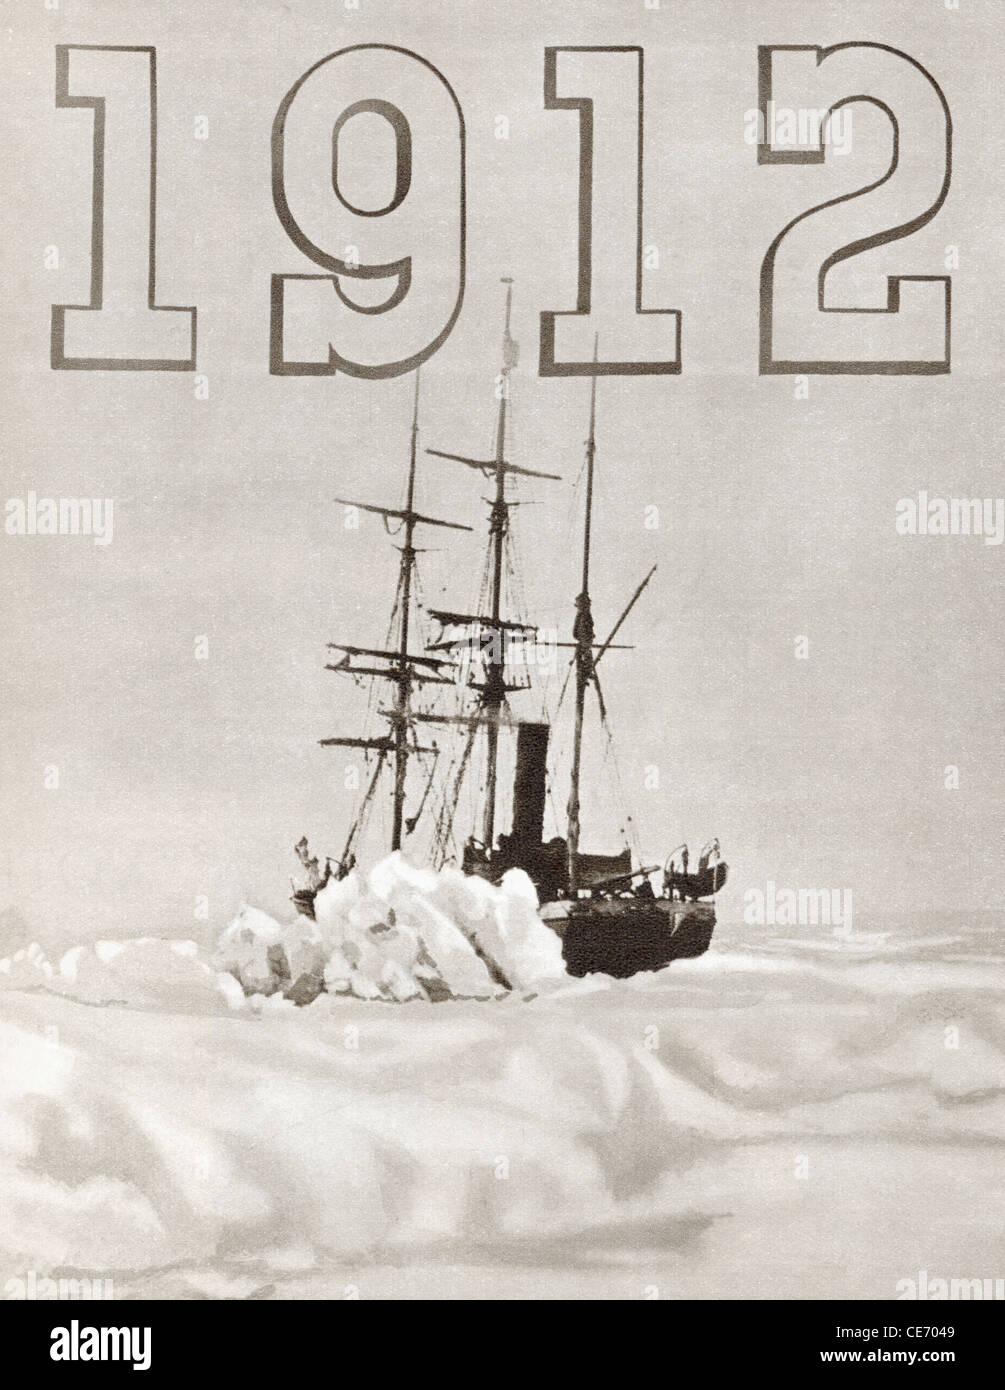 Terra Nova Le navire utilisé par Robert Falcon Scott au cours de l'expédition Terra Nova au pôle sud en 1912. Banque D'Images